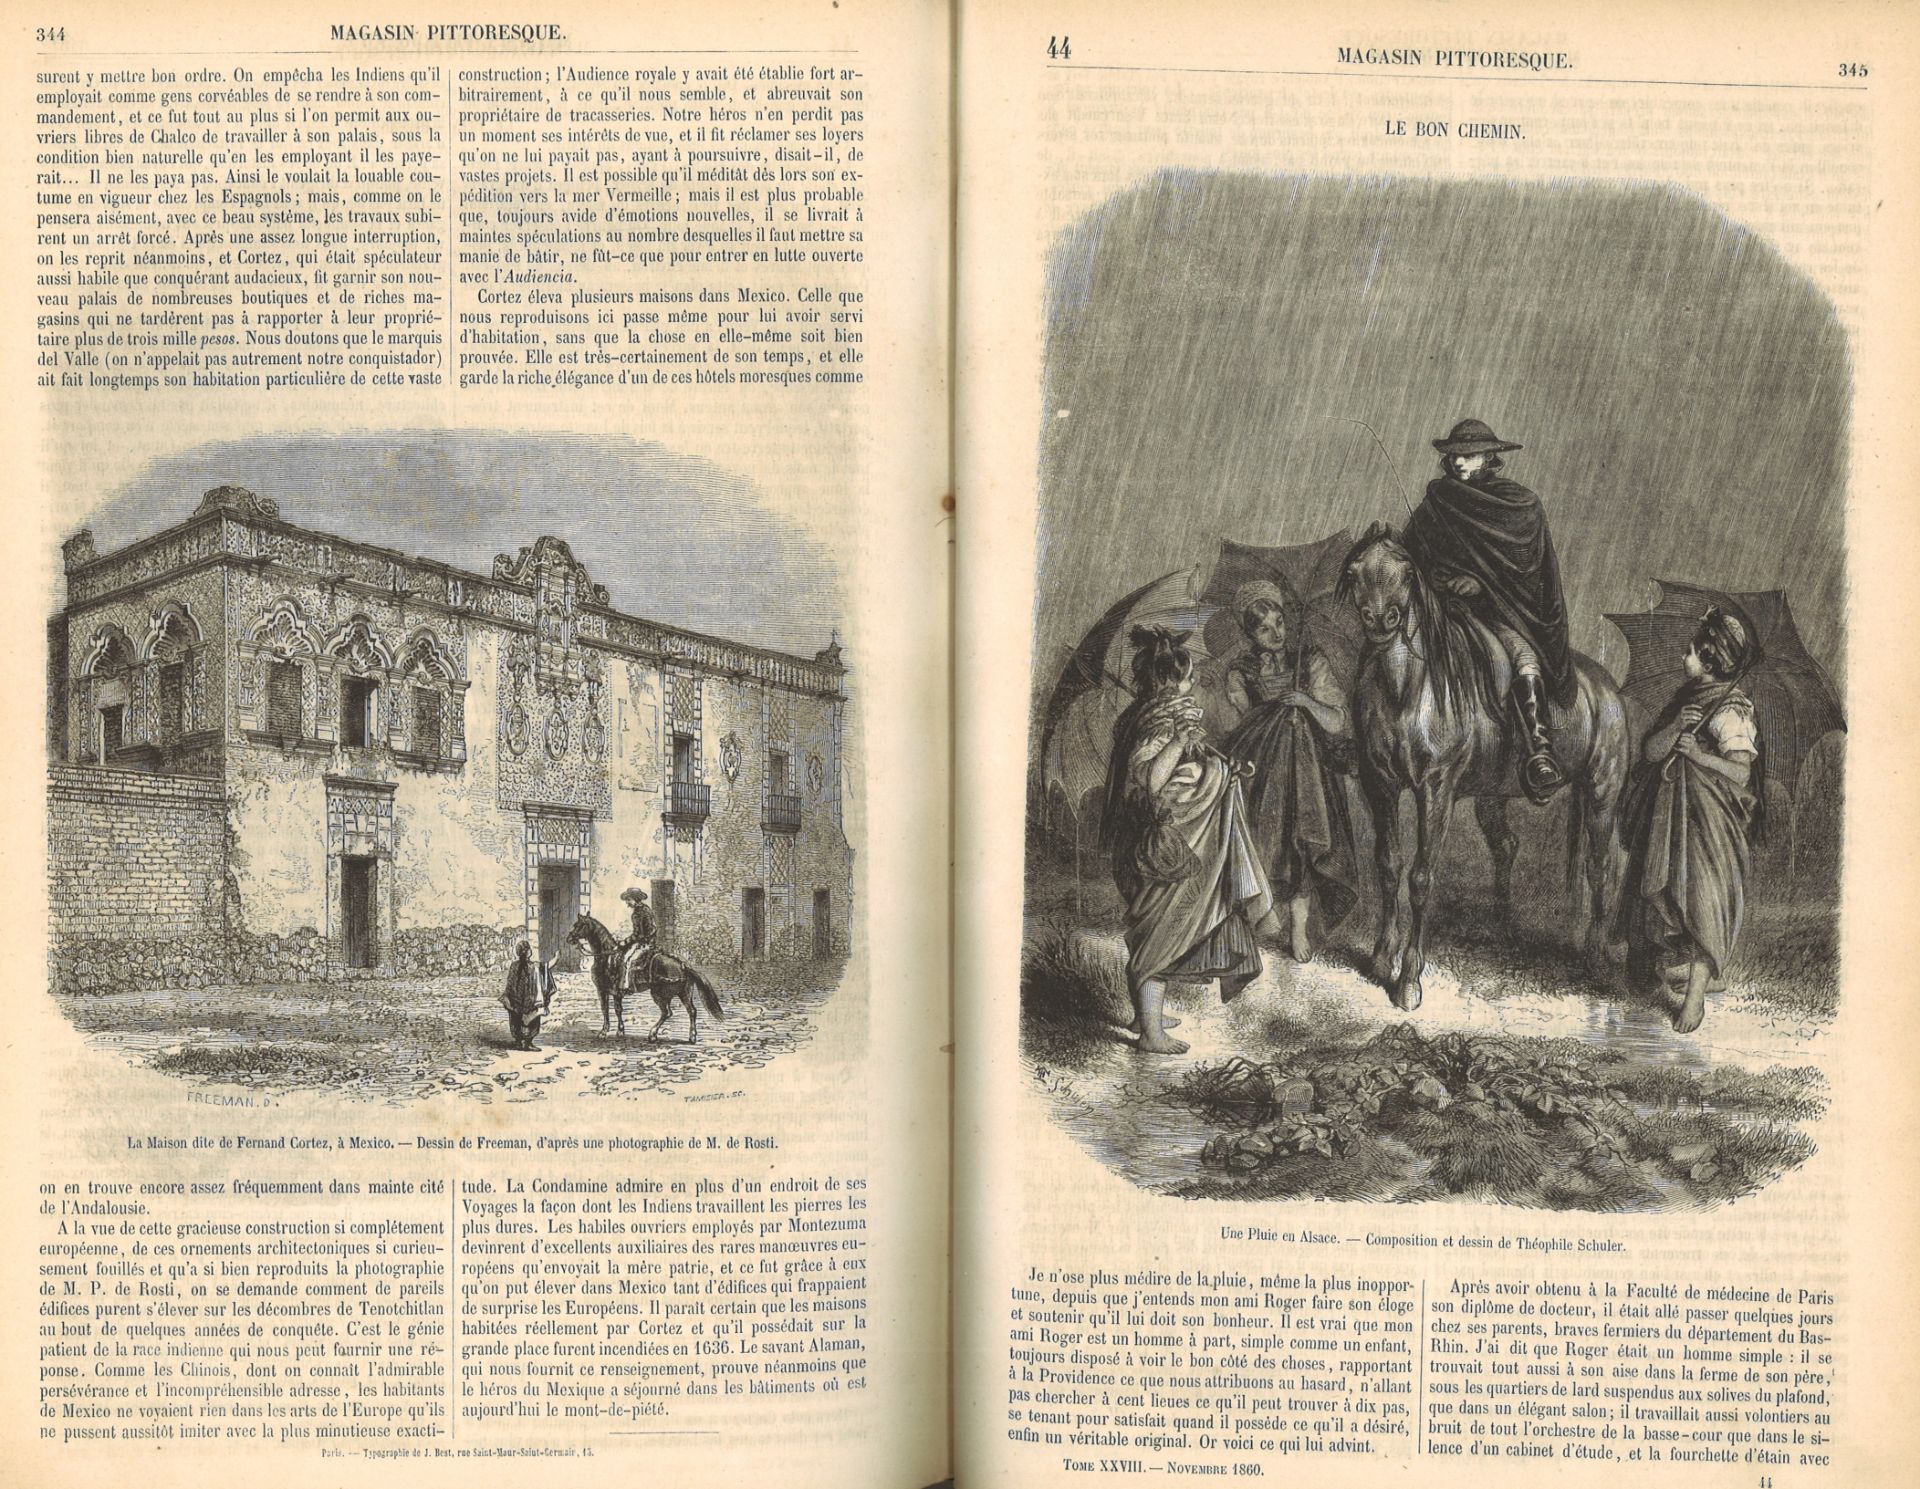 2x Bücher "Le Magasin Pittoresque" 1853 + 1860, Nr. 21 + 28. Mit Gebrauchsspuren - Image 3 of 3